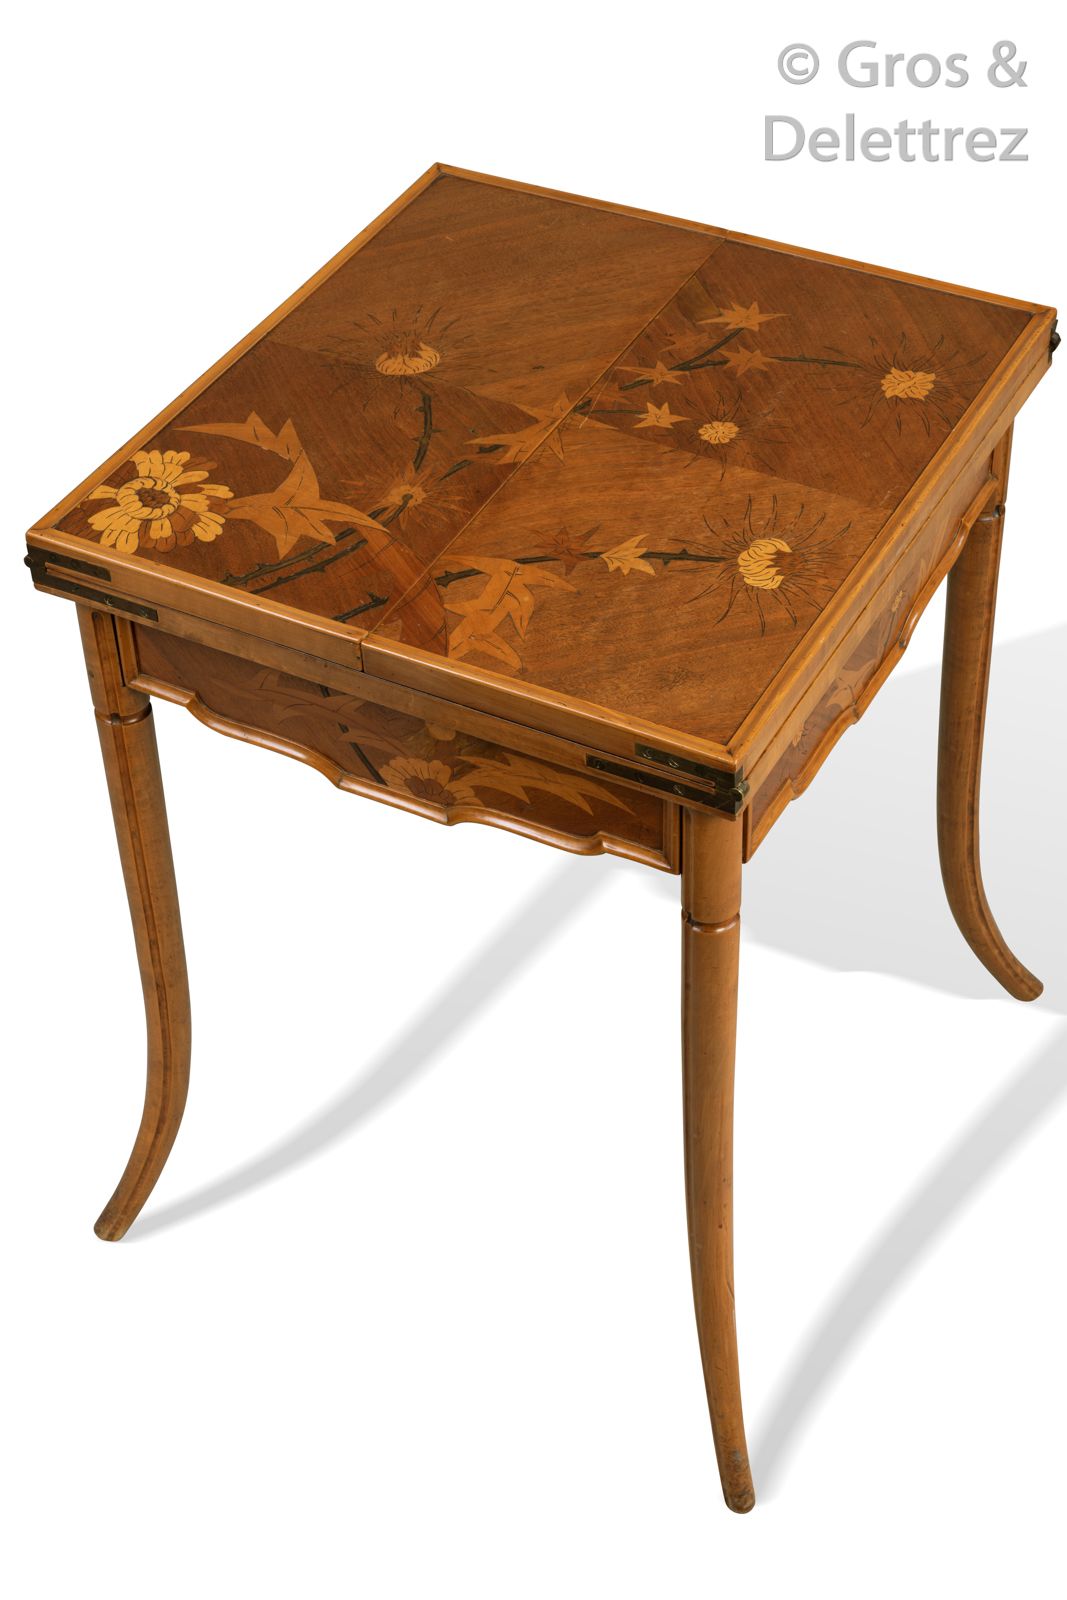 Émile GALLÉ (1846-1904) 一张游戏桌，有一个方形模制的顶部，装饰有镶嵌的花卉图案，旋转的铰链显示出镶嵌的人物和卡片属性。

它在腰部打开了&hellip;